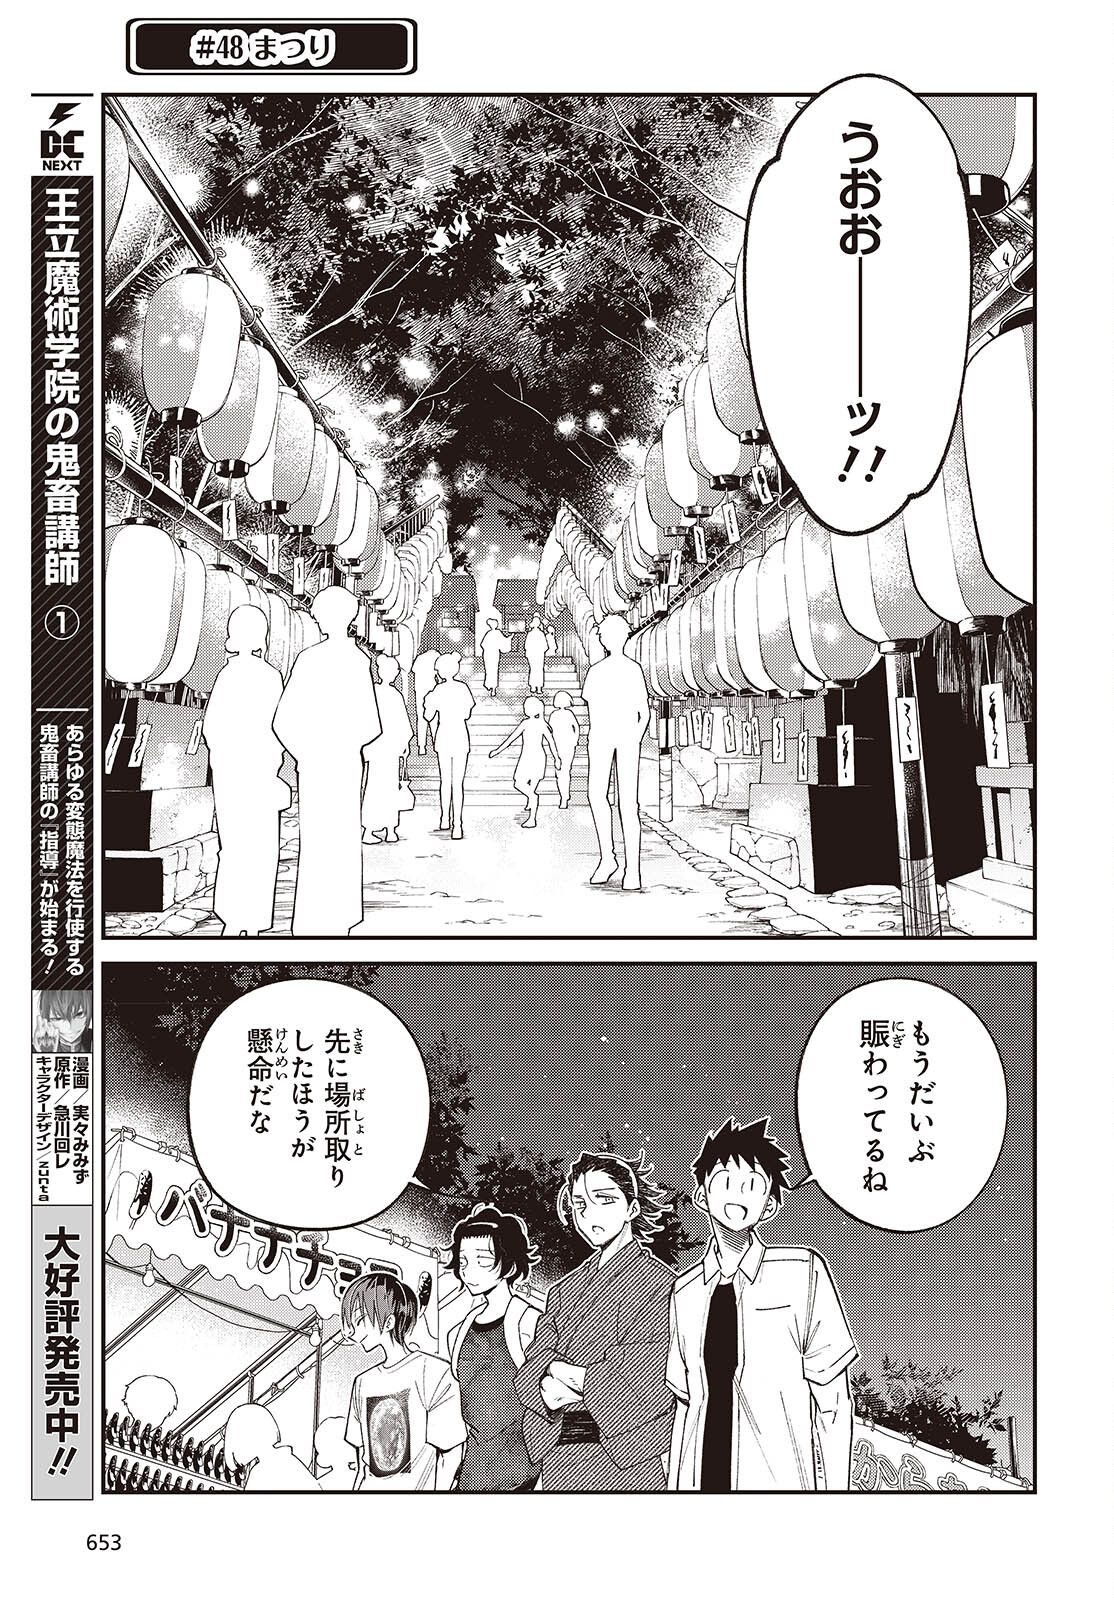 Ikimono-suki no Anima-san ni wa Honno Choppiri Doku ga aru - Chapter 10 - Page 3